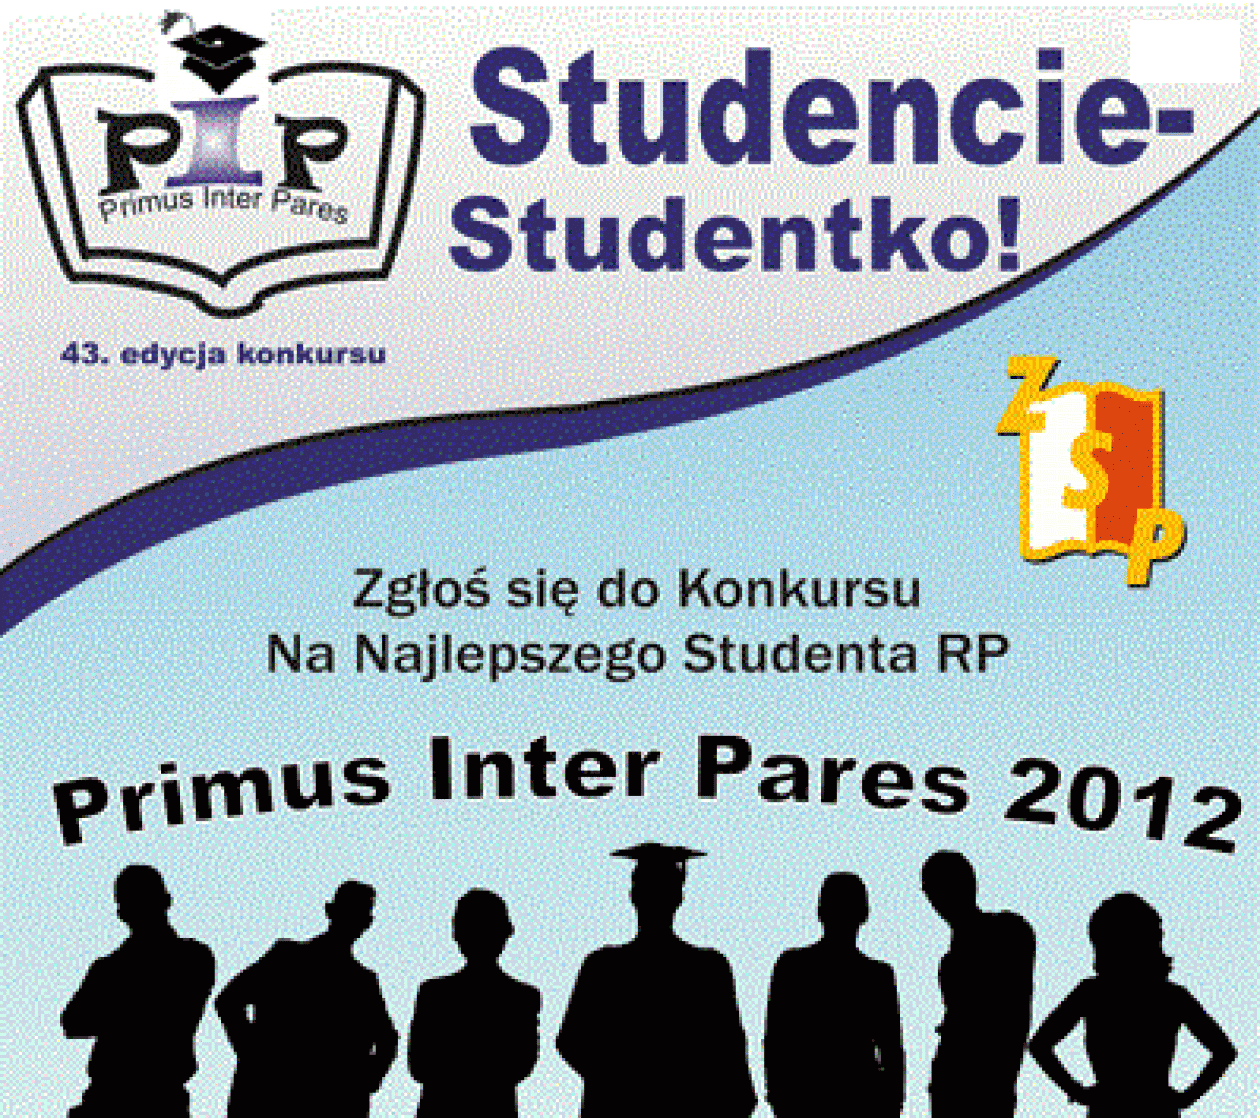 Primus Inter Pares 2012